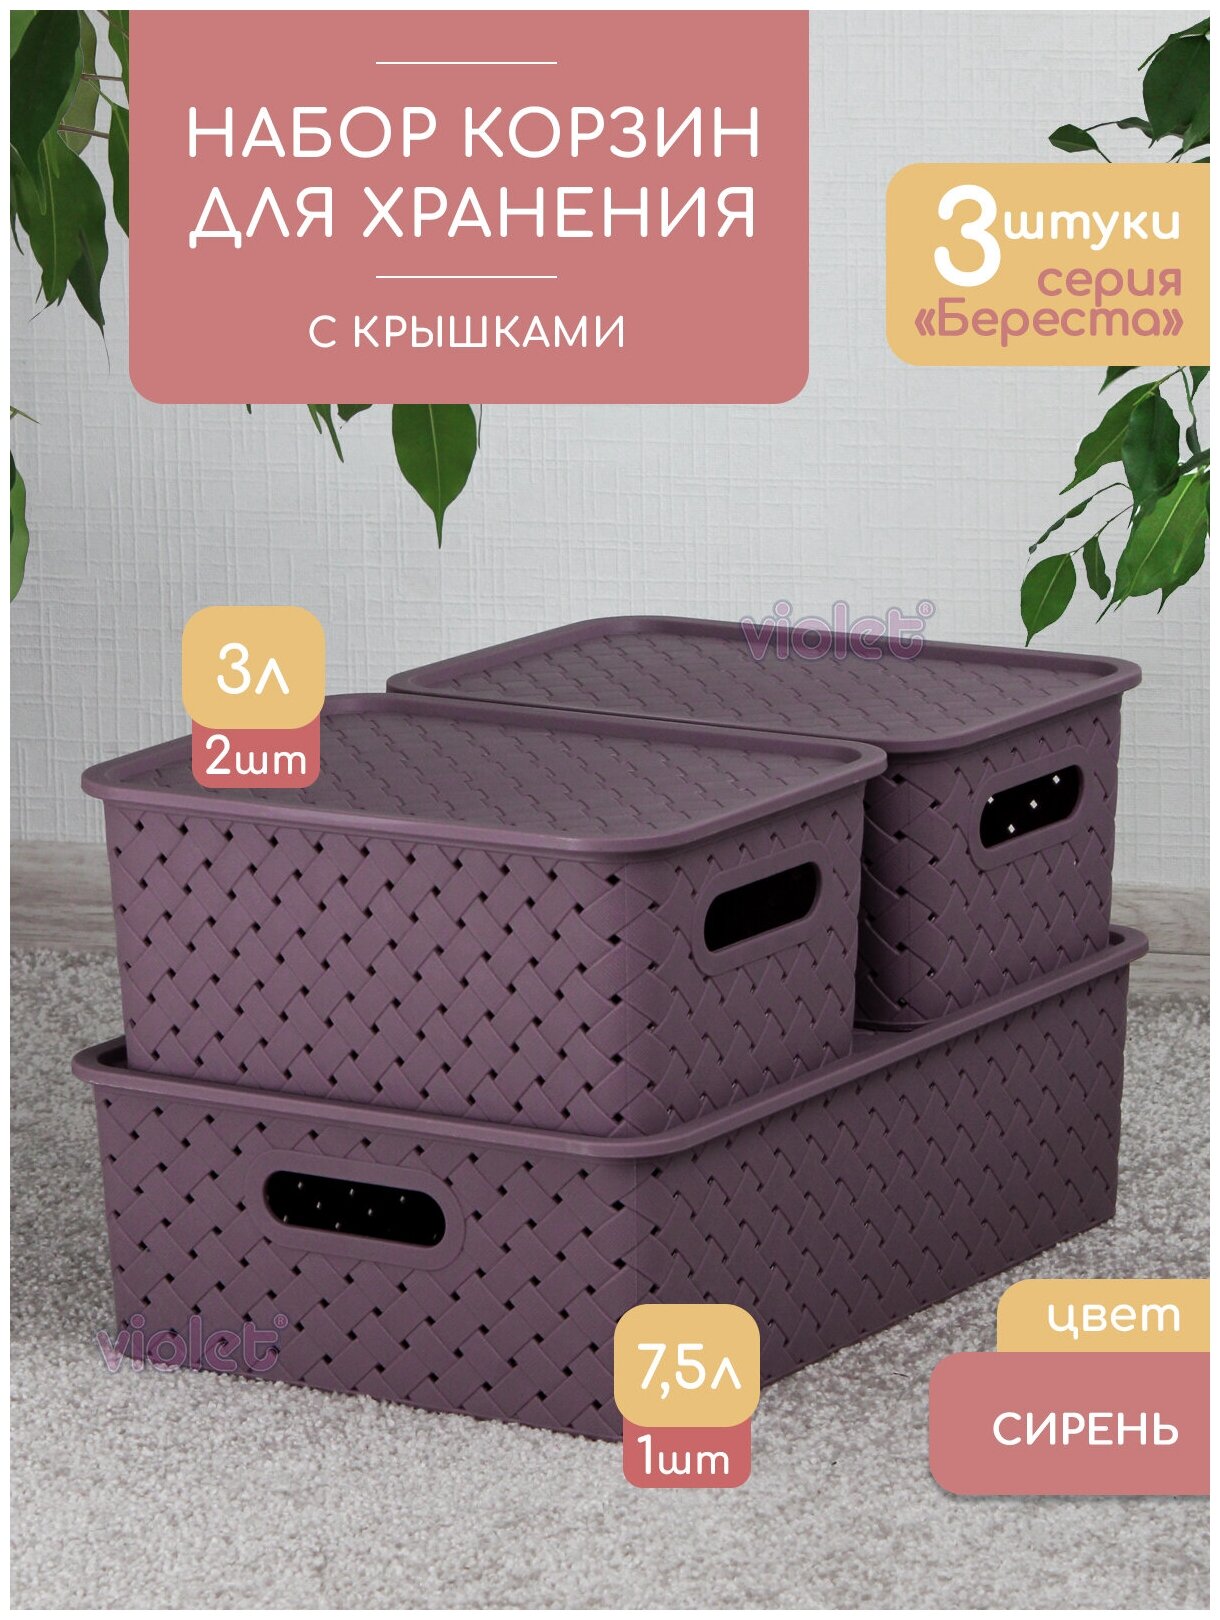 Набор из 3 корзин для хранения Береста 75л - 1 шт 3л - 2 шт / контейнер / хозяйственная коробка цвет сирень